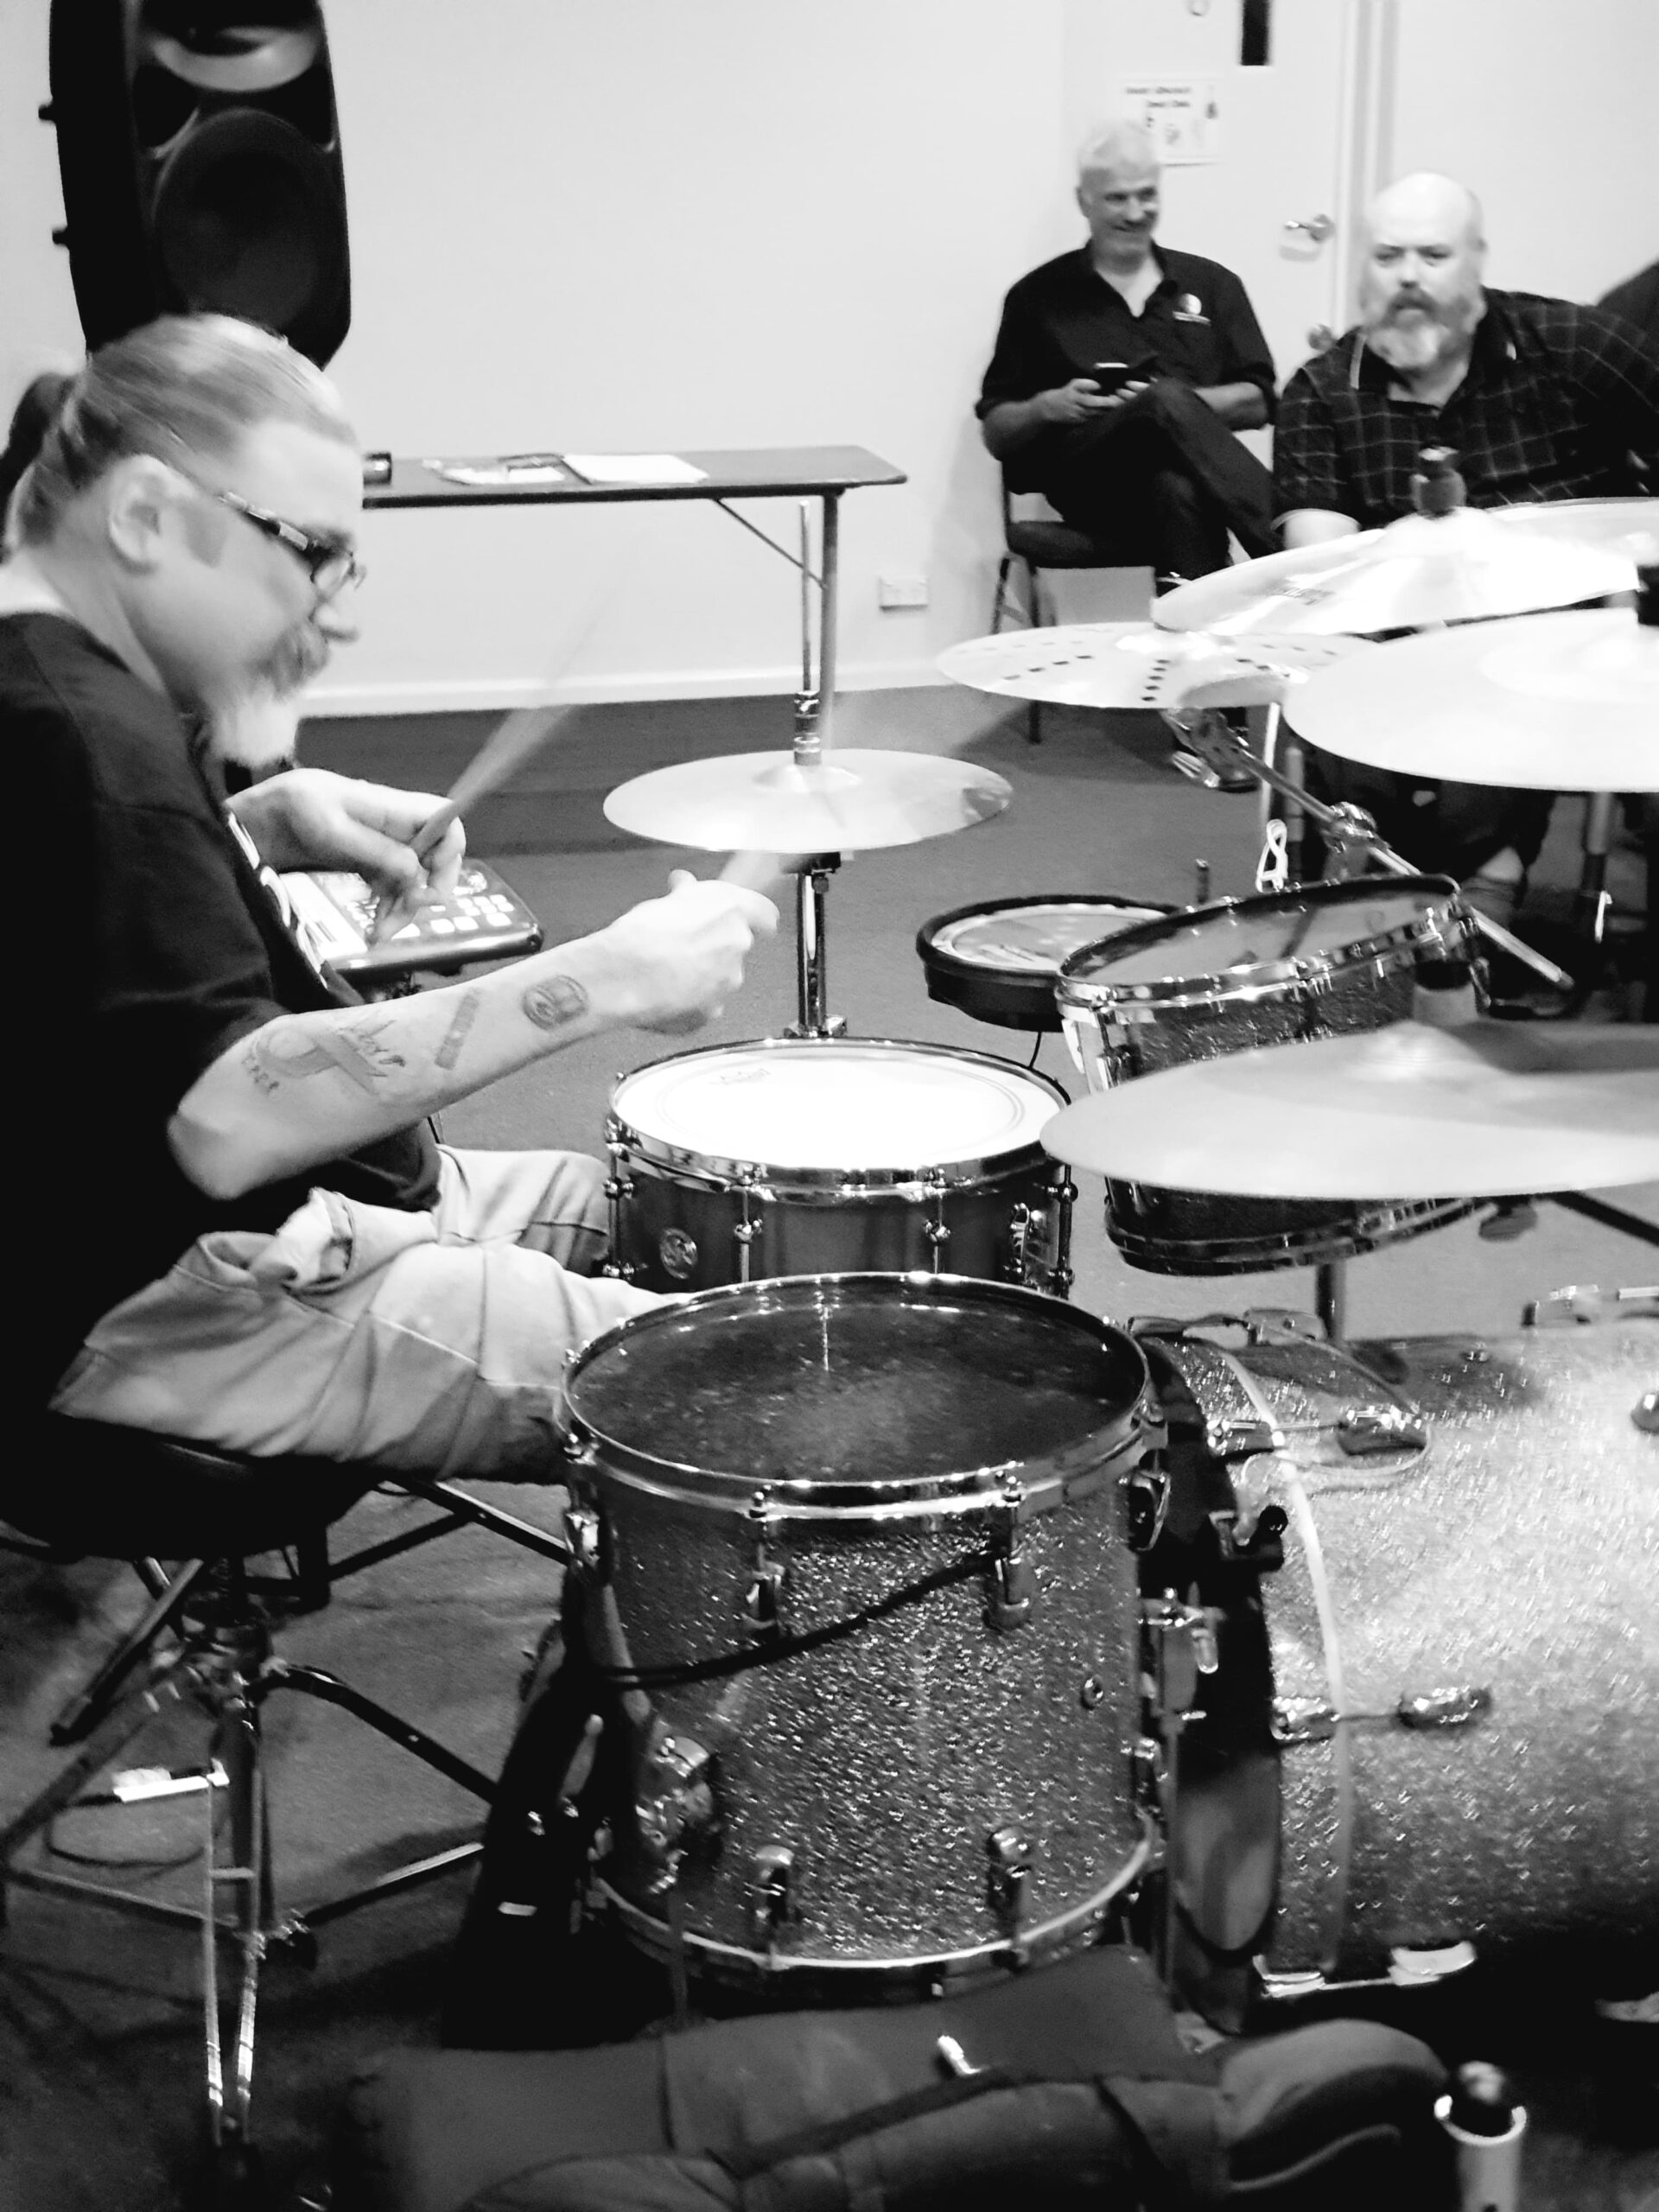 Andrew Hewitt wheelchair drummer performing behind a drum kit